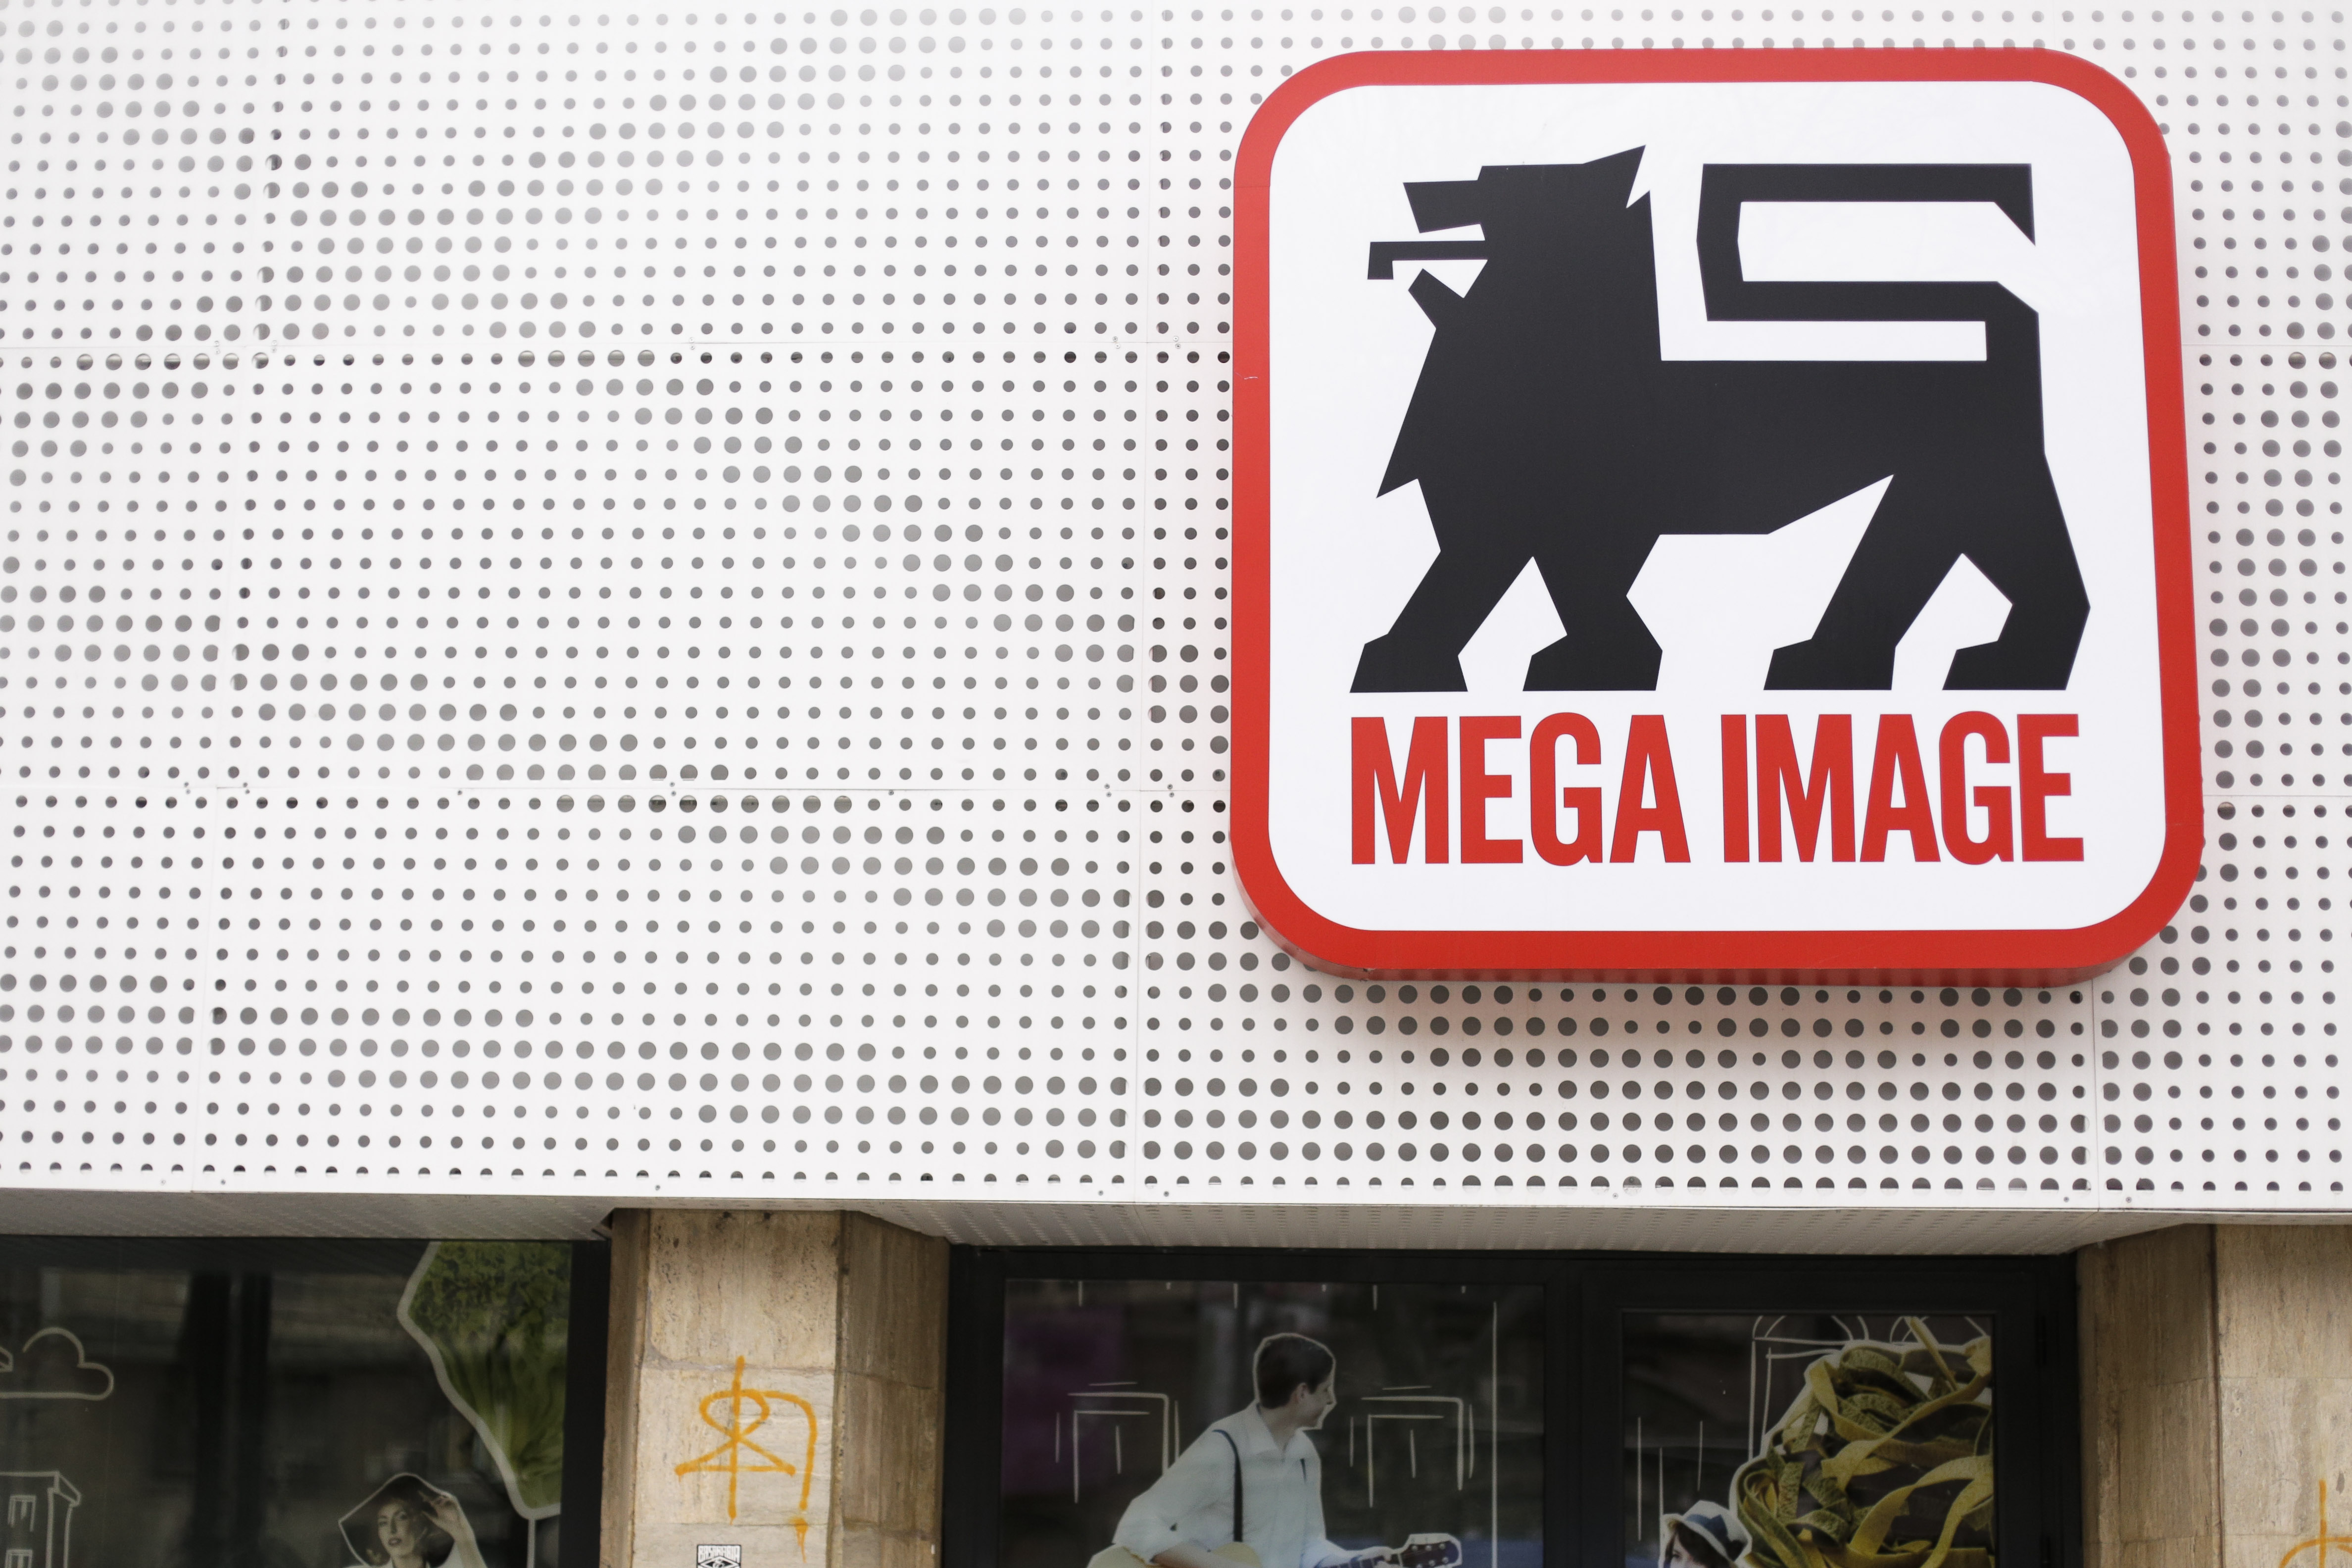 Comisarii ANPC au amendat cu cinci milioane de lei peste 230 de magazine Mega Image controlate - mega-image-controlata-anpc-1706807684.jpg